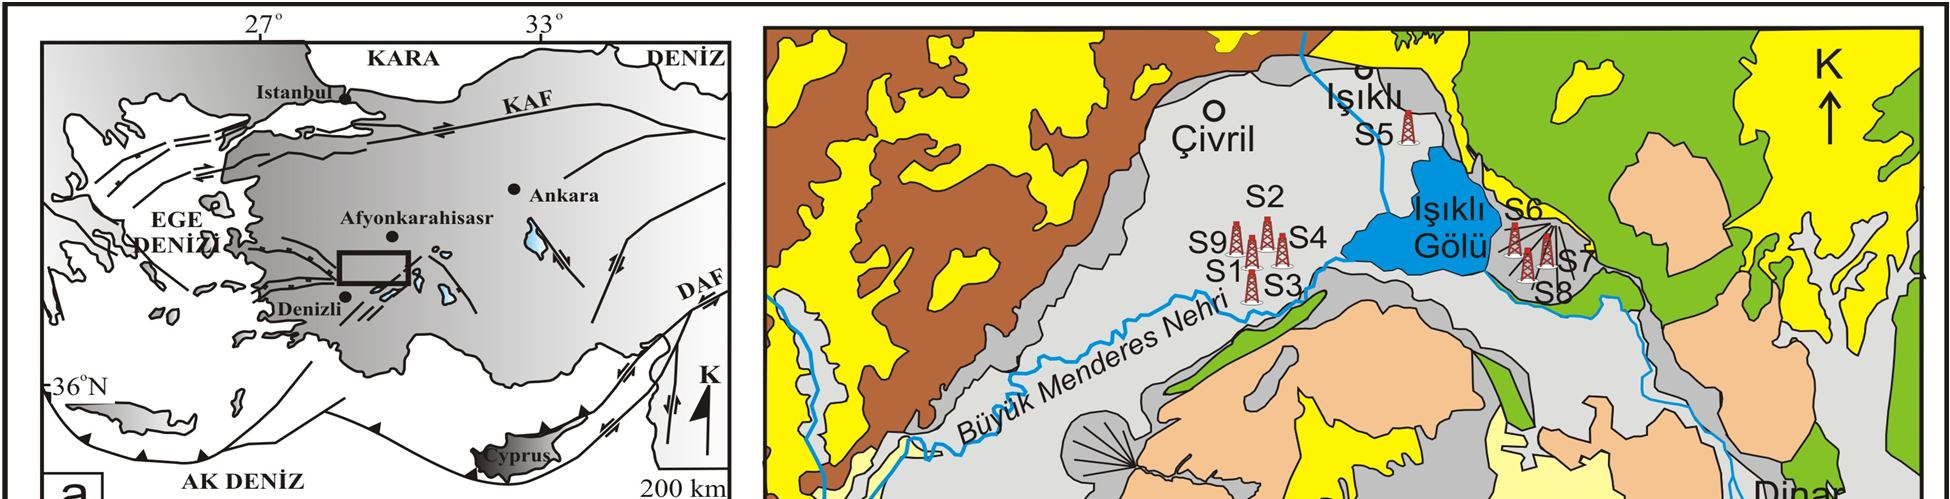 Şekil 1. (a) İnceleme alanının yer bulduru haritası, (b) Çalışma alanının jeoloji haritası, (Konak, 2002; Konak ve Şenel, 2002; Şenel, 2002; Turan, 2002; Gürbüz et. al. 2011) Dinar ve Baklan Basenindeki sondaj lokasyonları (S1, S2, S3, S4, S5 ve S6, S7, S8, S9 sondajları), (c) Baklan-Dinar Basenlerinin topoğrafik haritası.